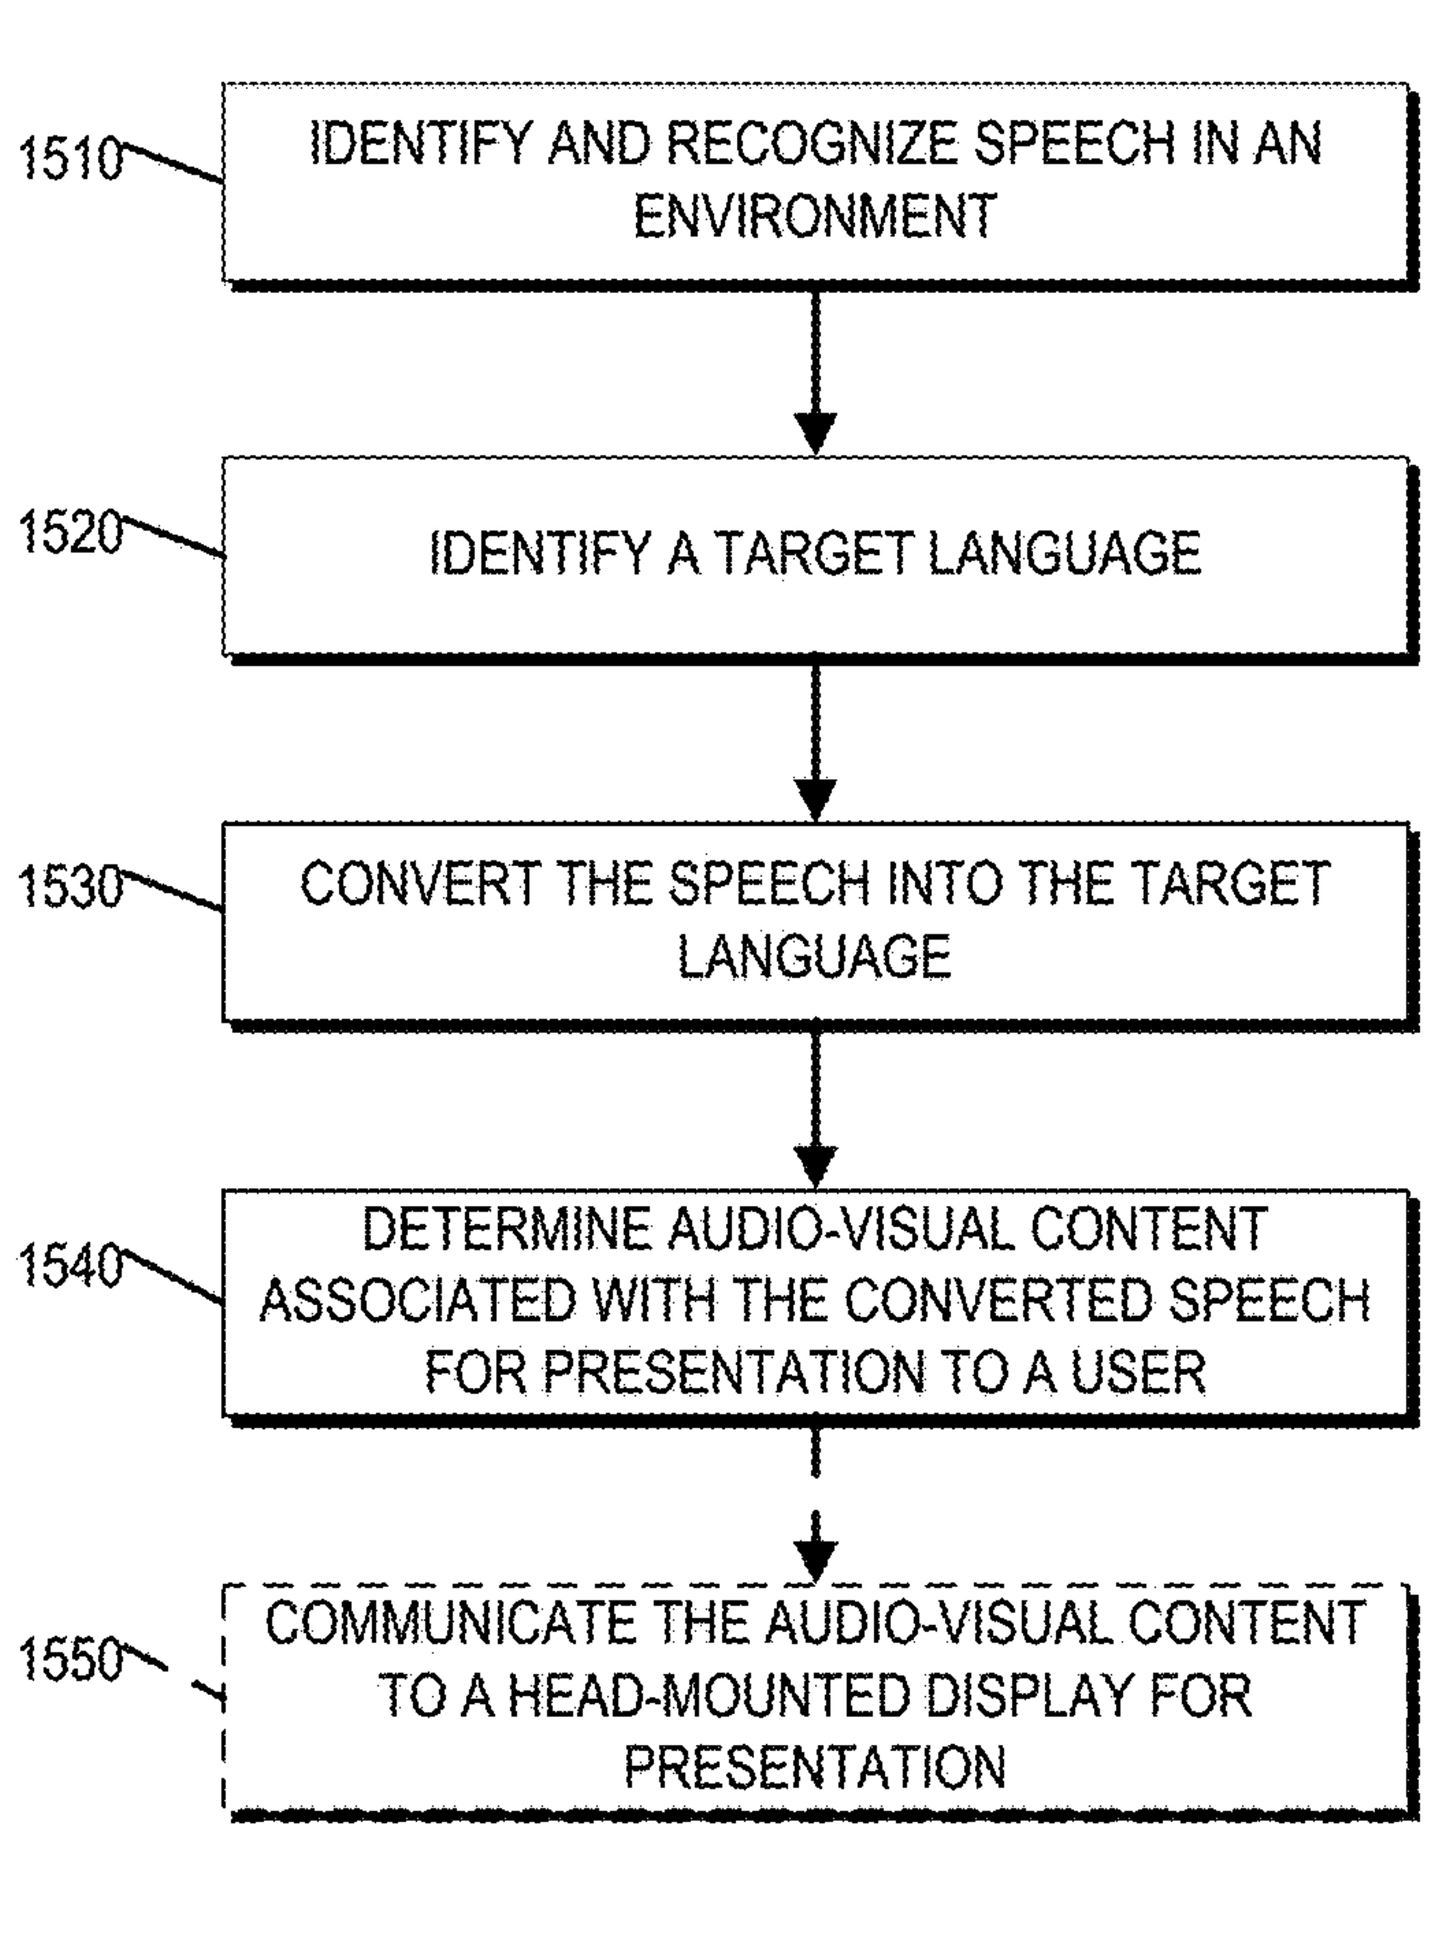 Magic Leap Patent Reveals Plans for Sign Language & Text Translation App